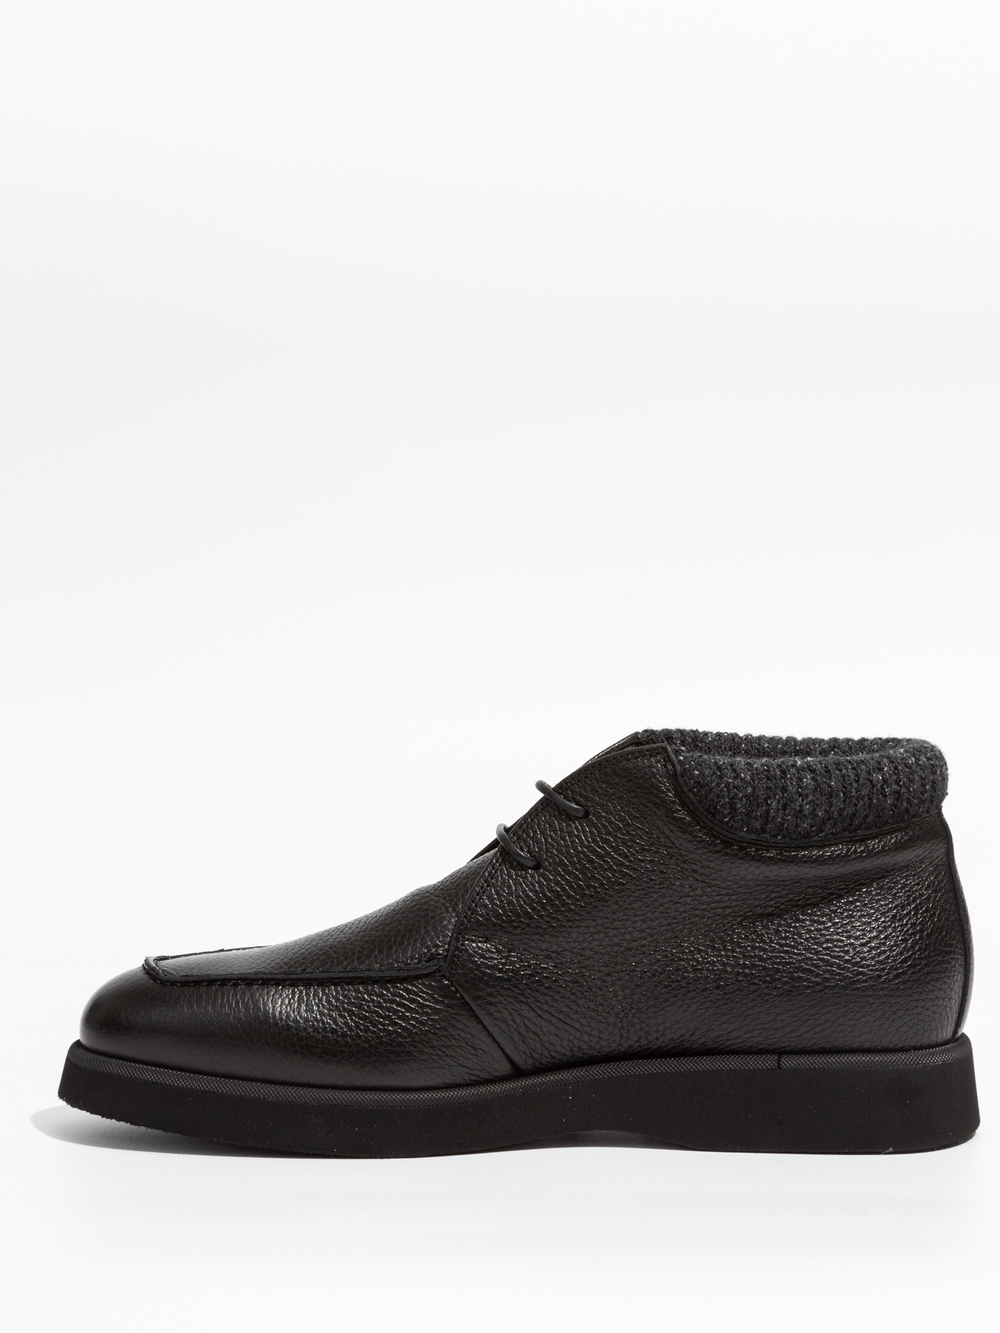 Кожаные ботинки Luca Guerrini 11542 черные